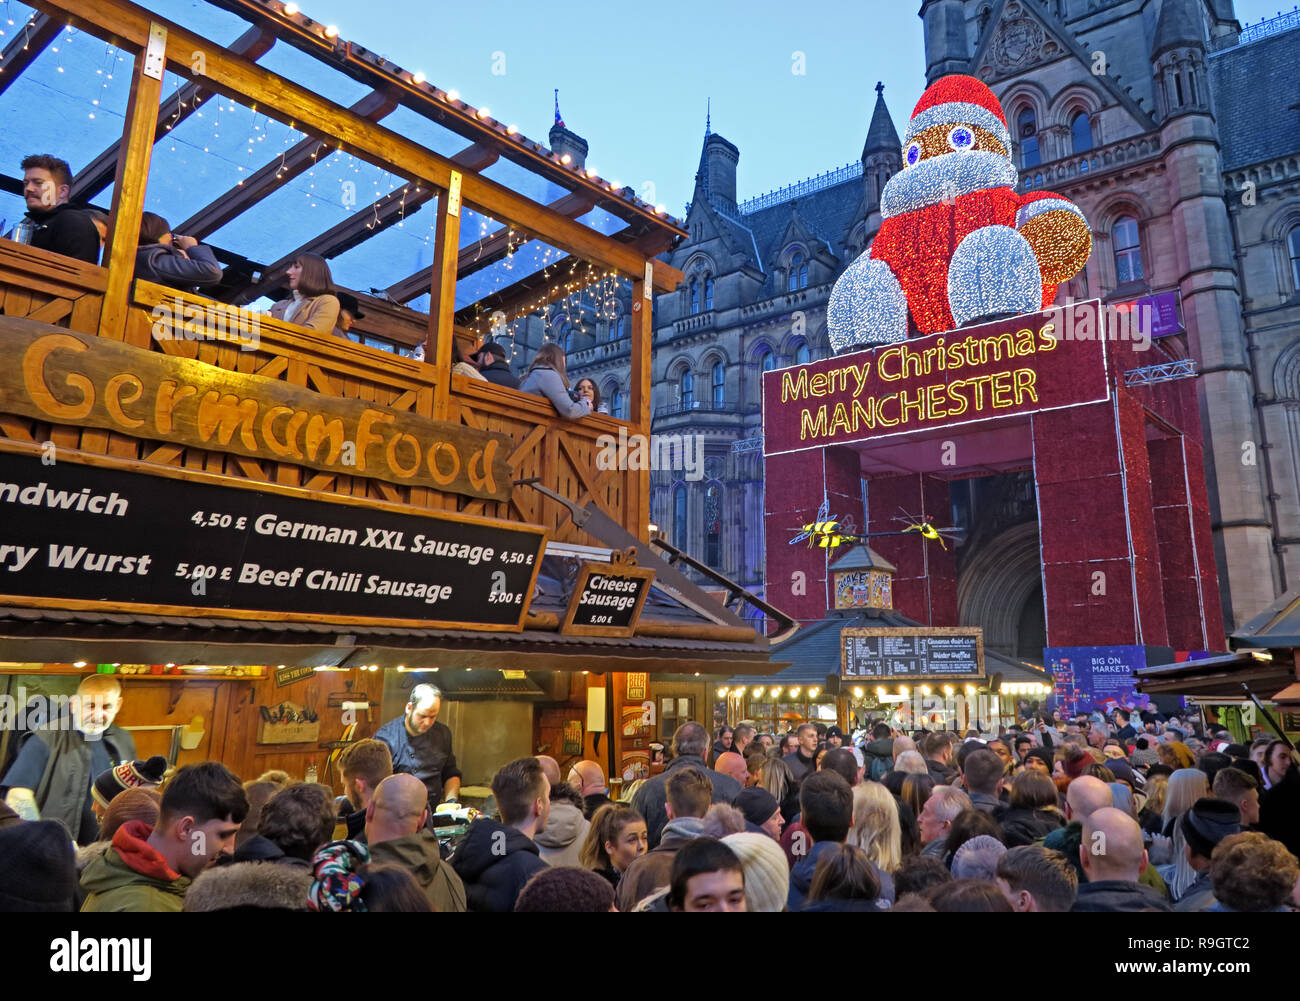 La nourriture allemande, marchés de Noël, Albert Square, Manchester, Lancashire, North West England, UK, au crépuscule Banque D'Images